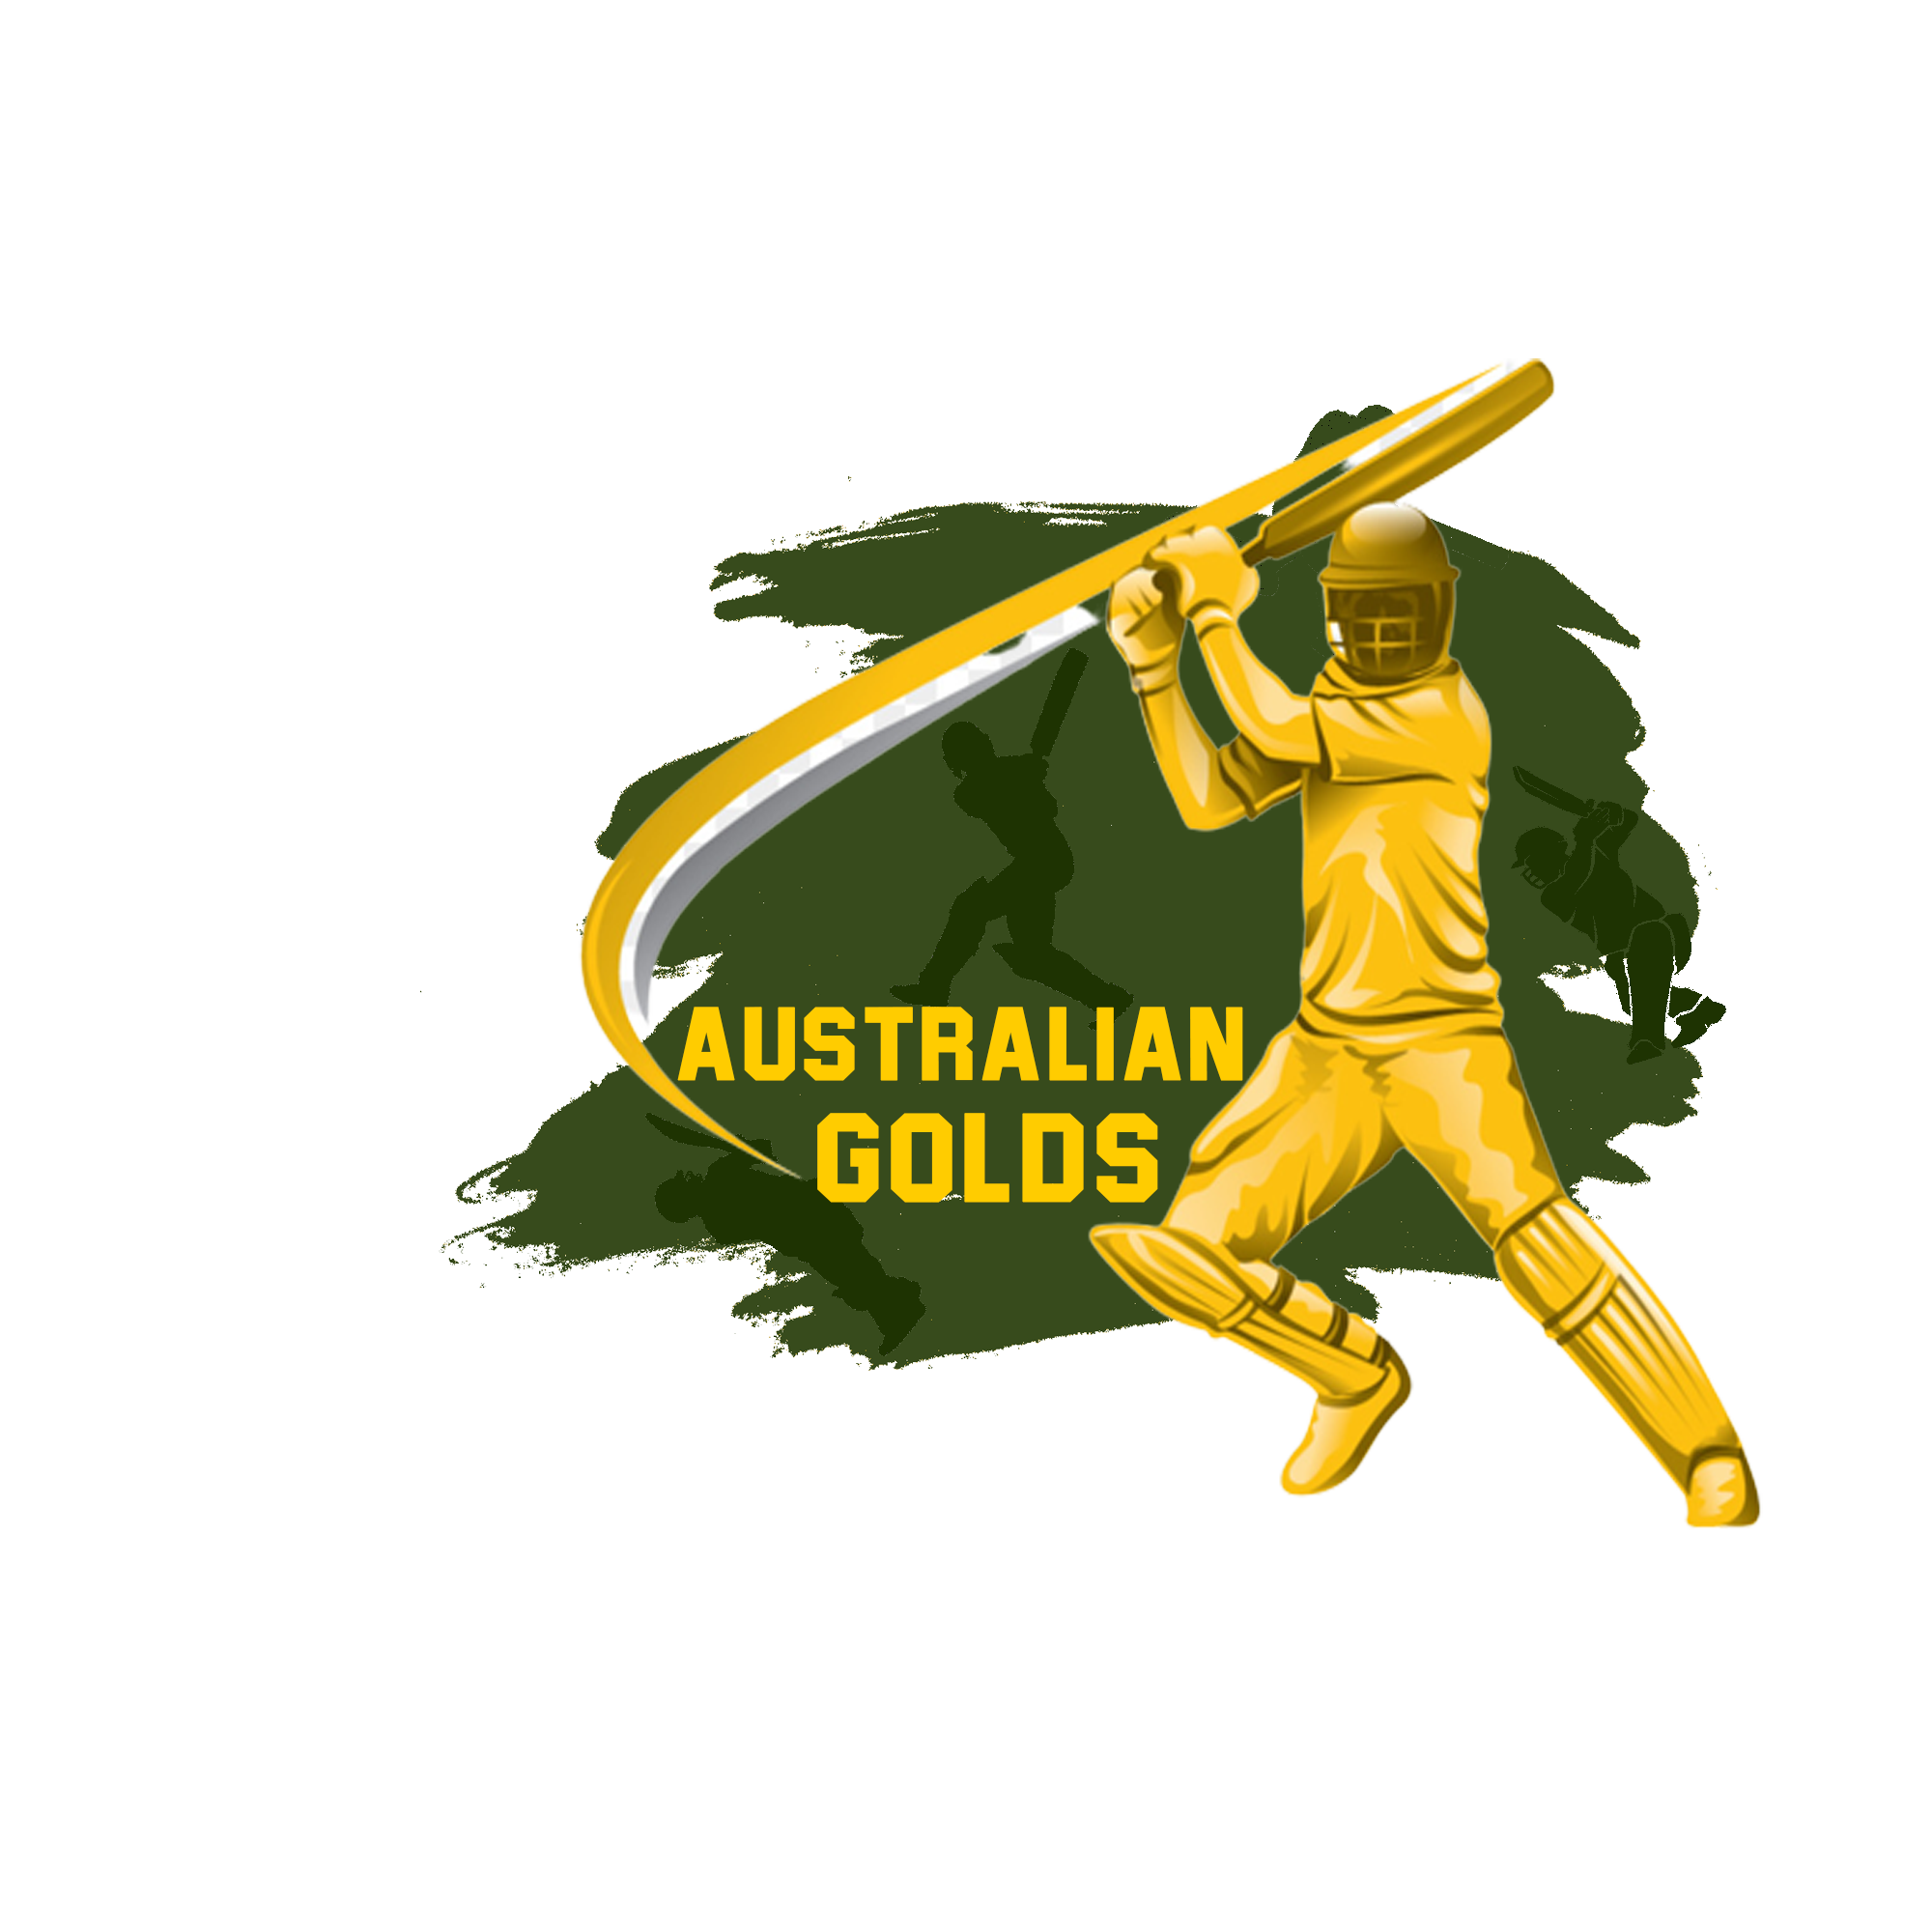 The logo of GPCL team Australian Golds